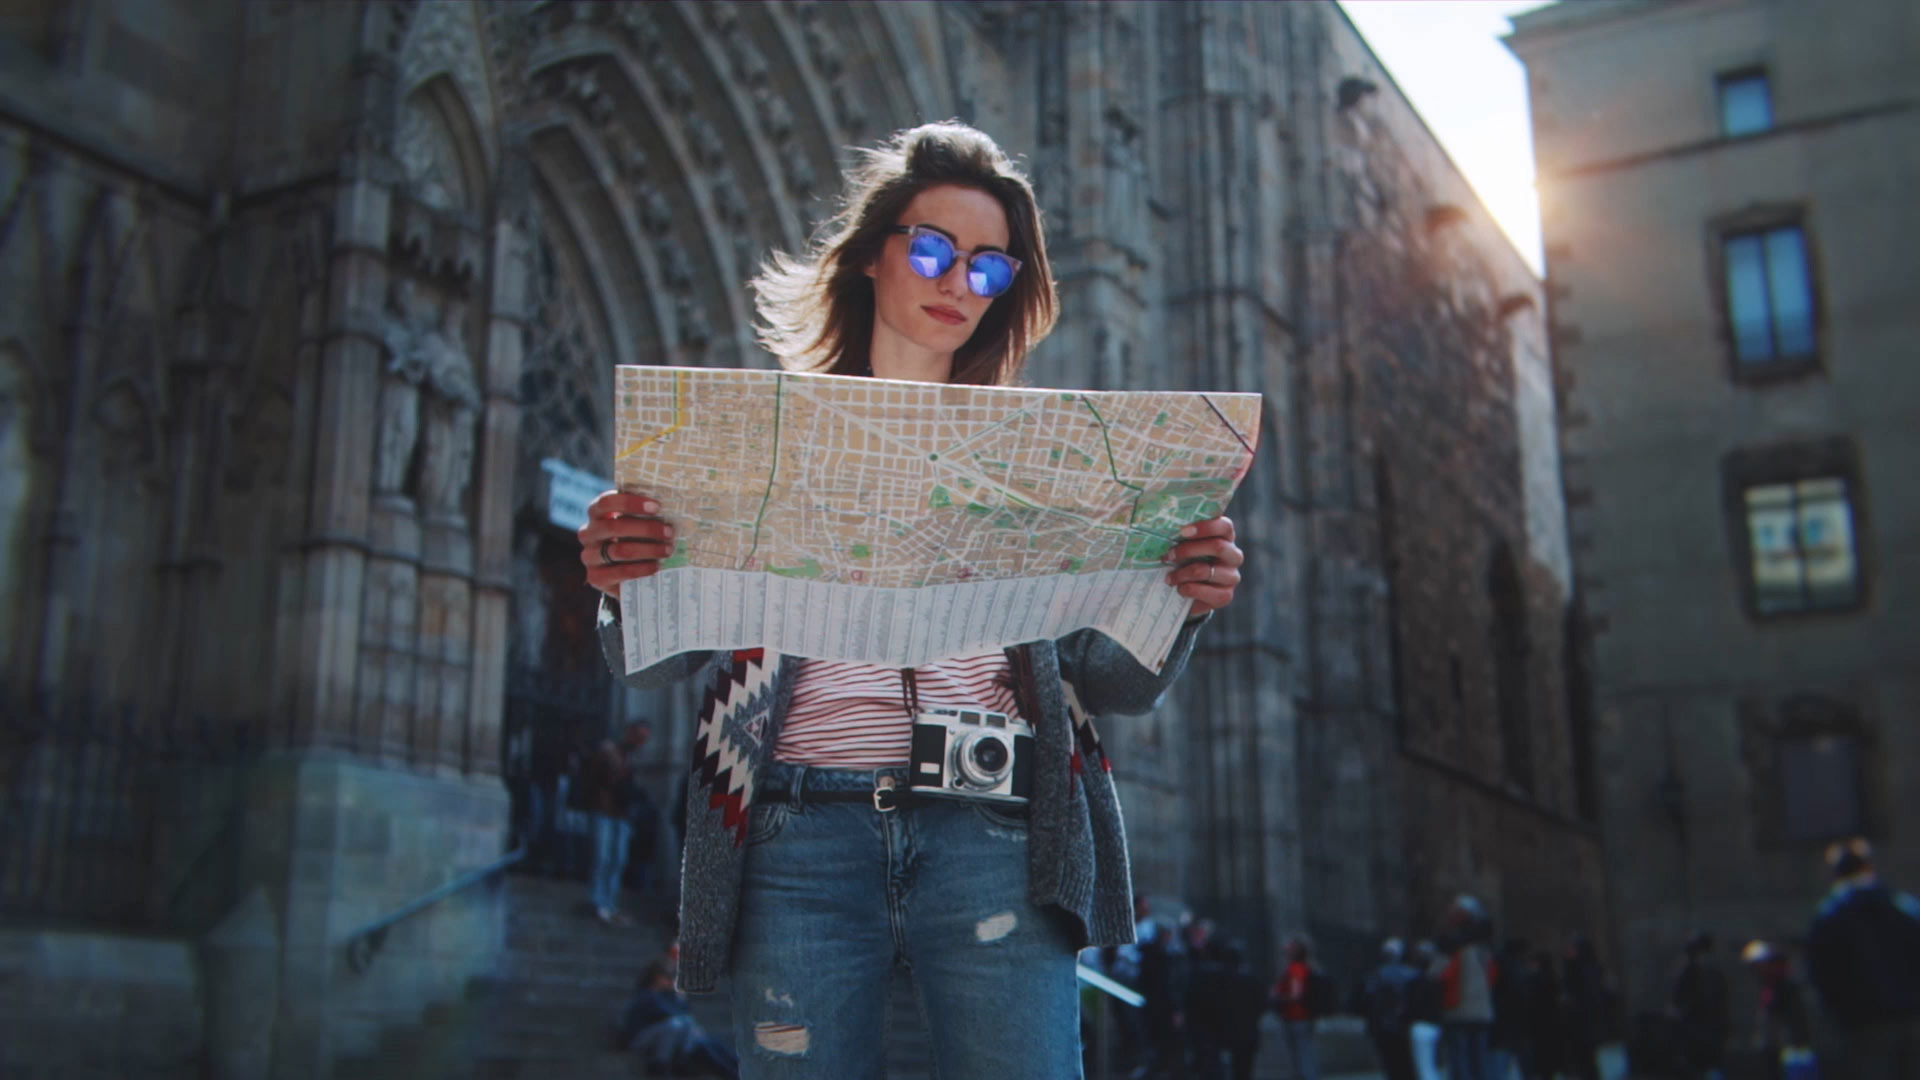 Turista en Barcelona mirando el mapa con la Catedral de Barcelona al fondo.